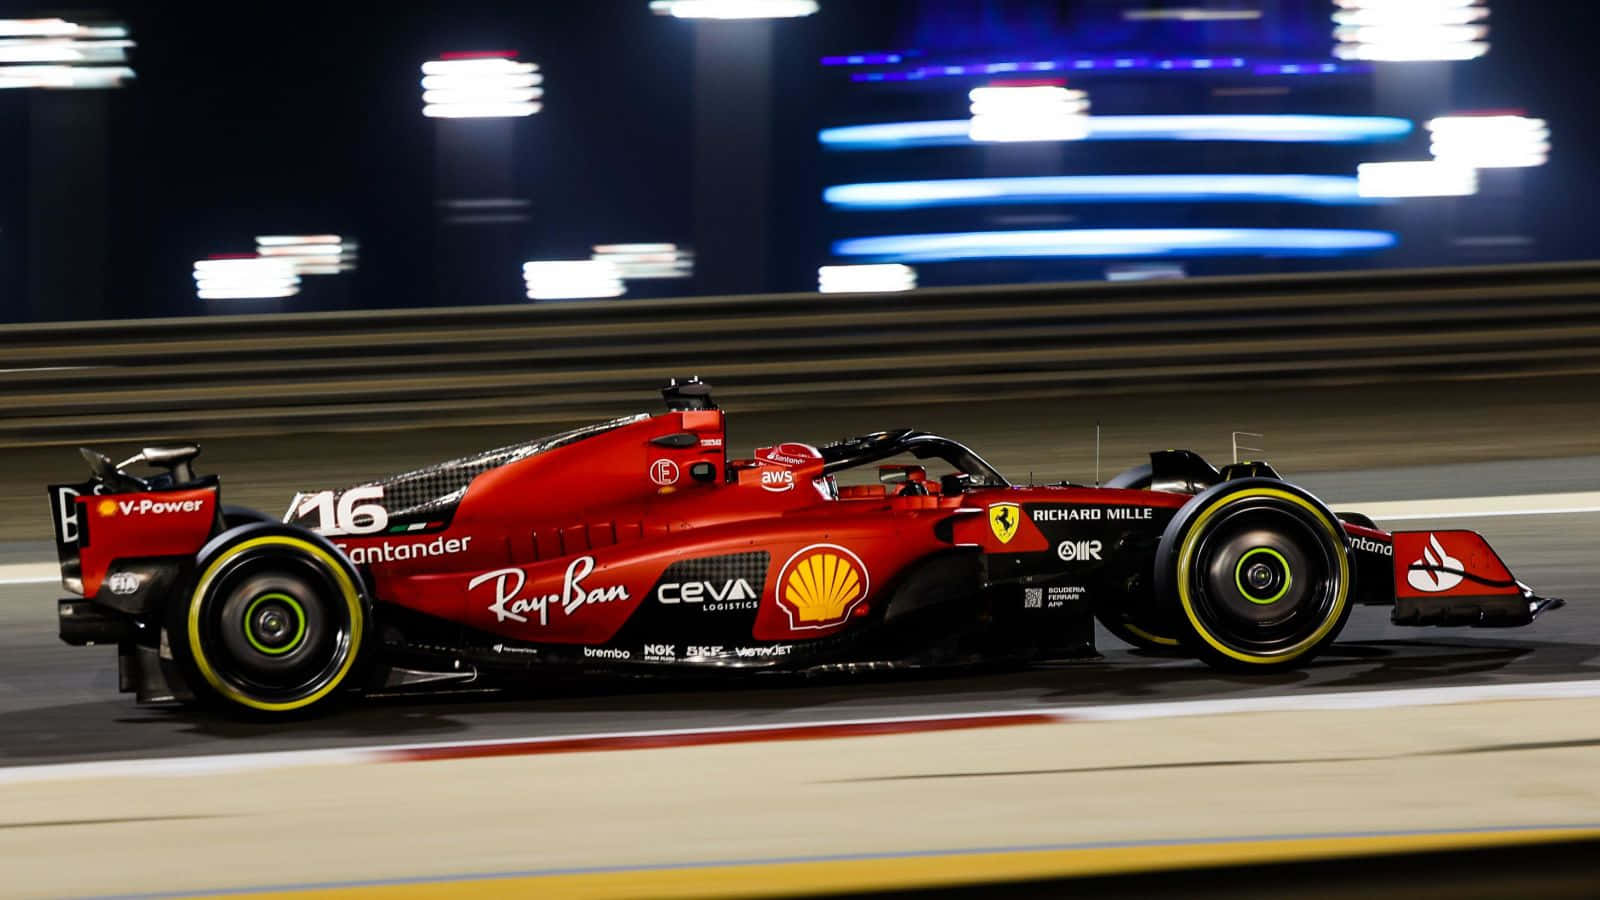 Ferrari F1 Car Driving On A Track At Night Wallpaper